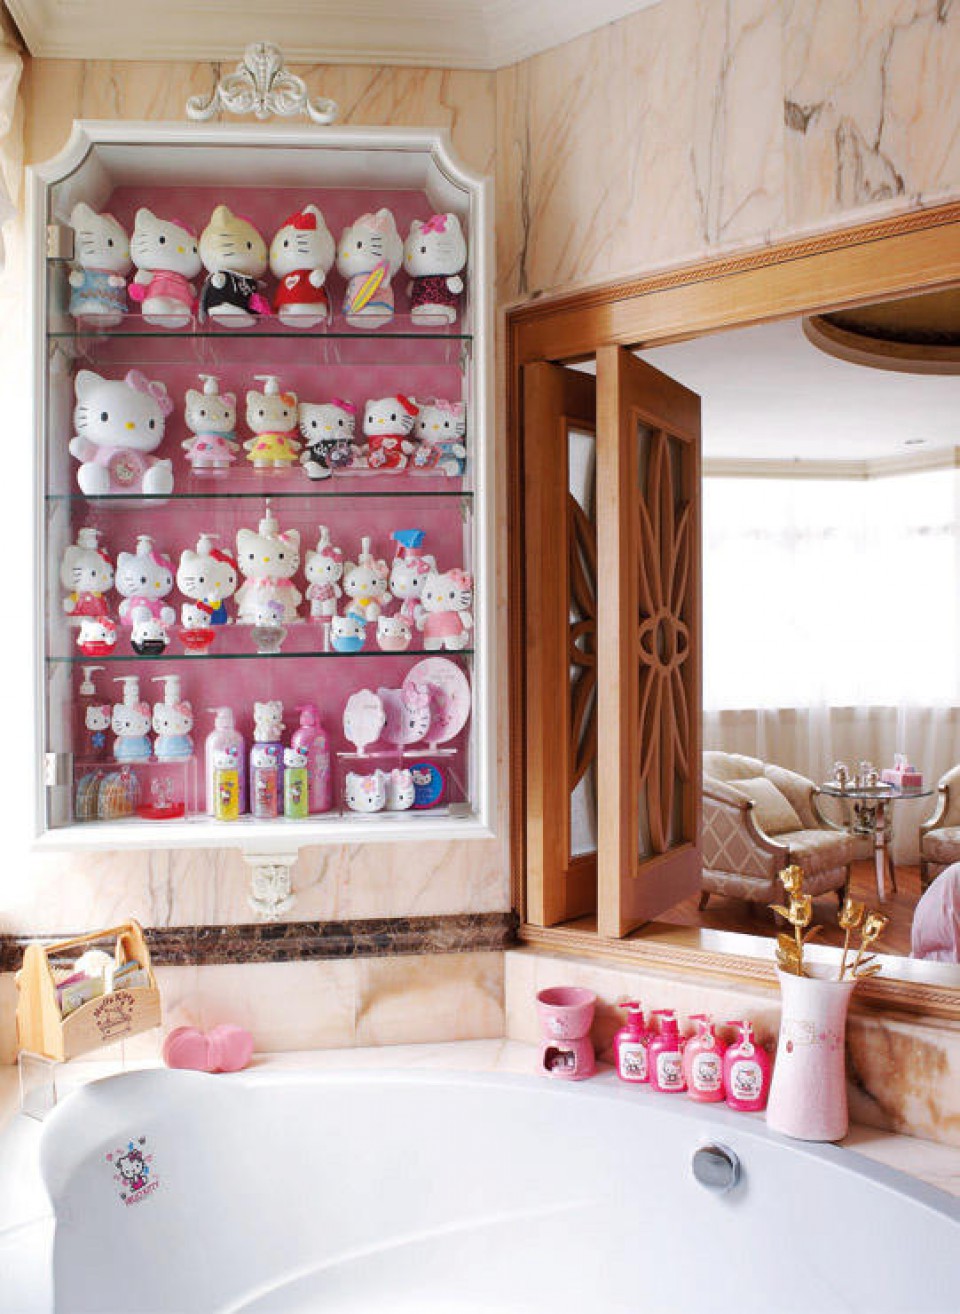 Rumah Tema Hello Kitty Dari Hiasan Sampai Furniture Serba Pink Dan Putih Ala Kucing Ikonik Sanrio Furnizing